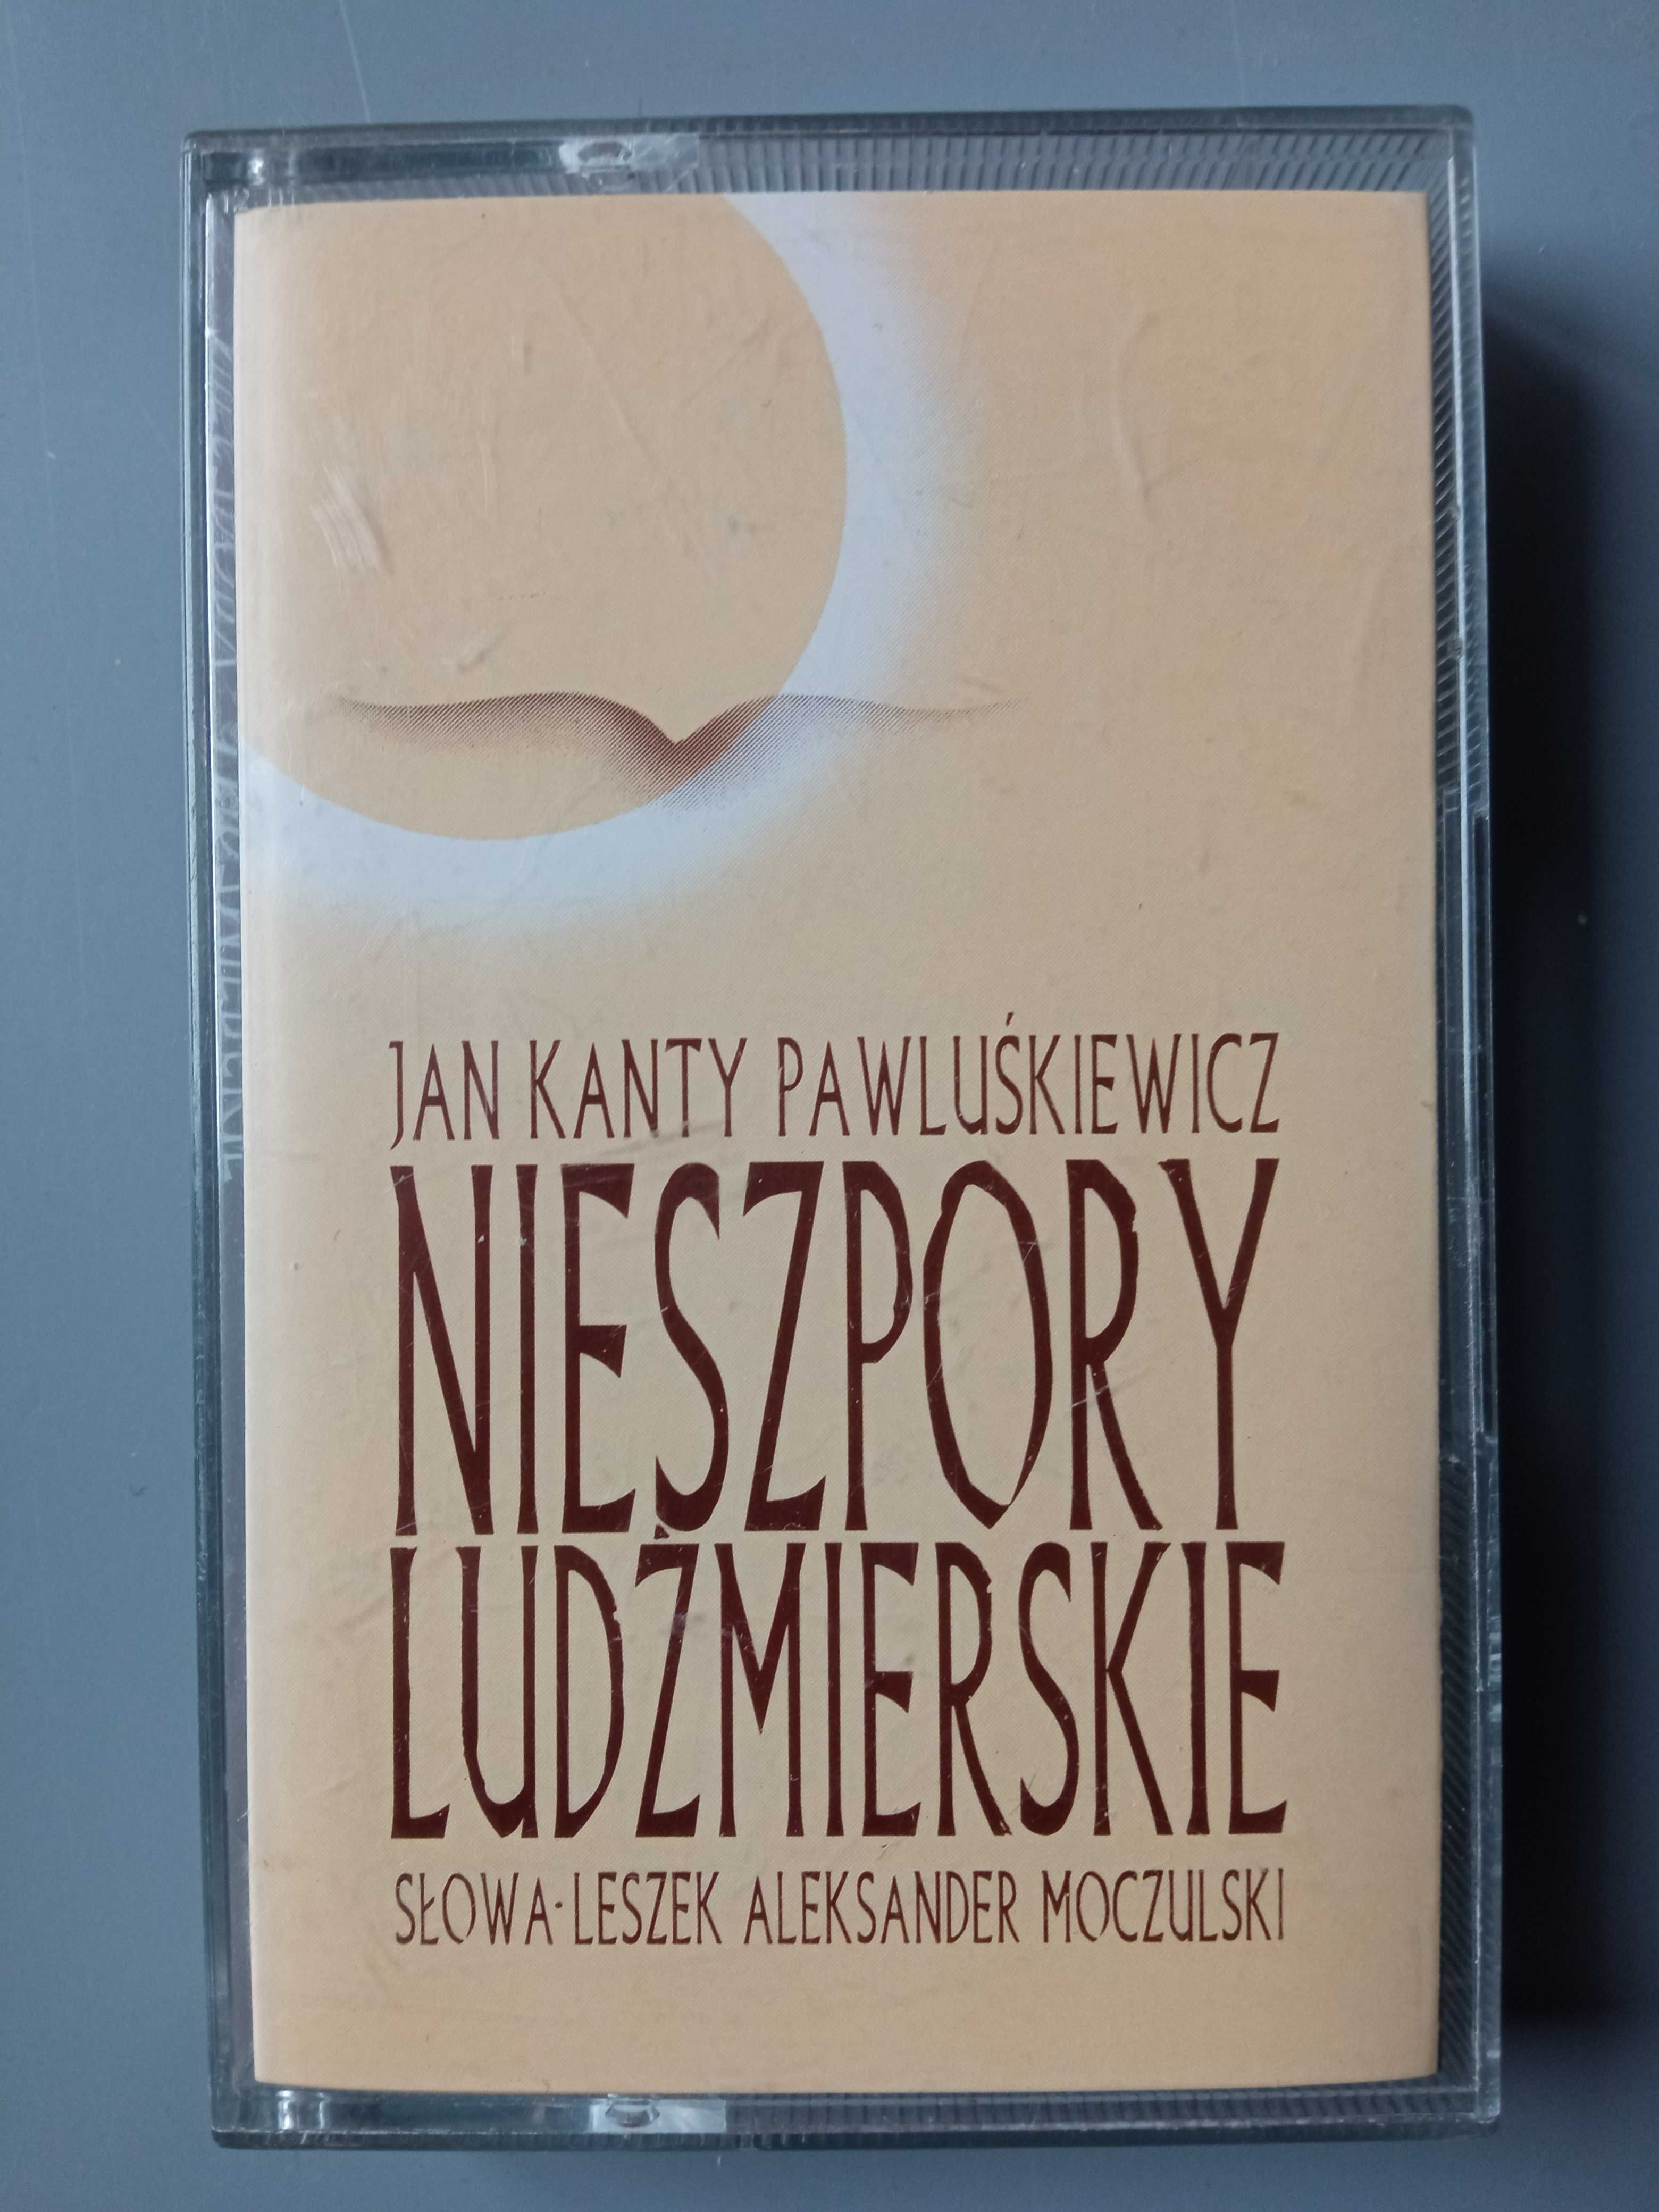 Nieszpory ludźmierskie Jan Kanty Pawluśkiewicz kaseta kolekcje